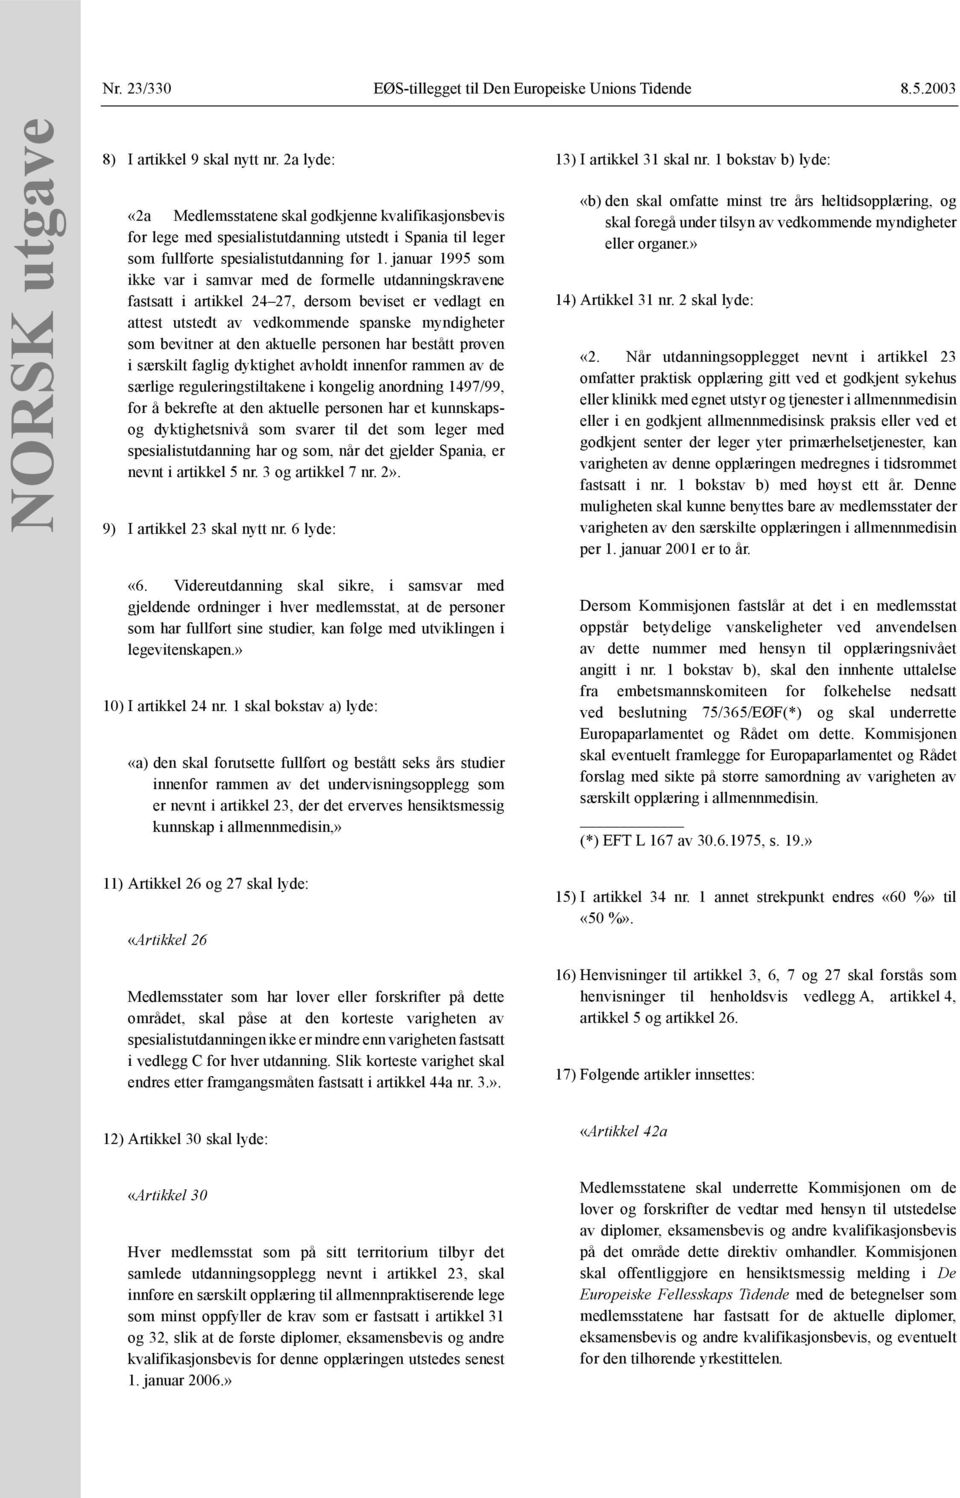 januar 1995 som ikke var i samvar med de formelle utdanningskravene fastsatt i artikkel 24 27, dersom beviset er vedlagt en attest utstedt av vedkommende spanske myndigheter som bevitner at den